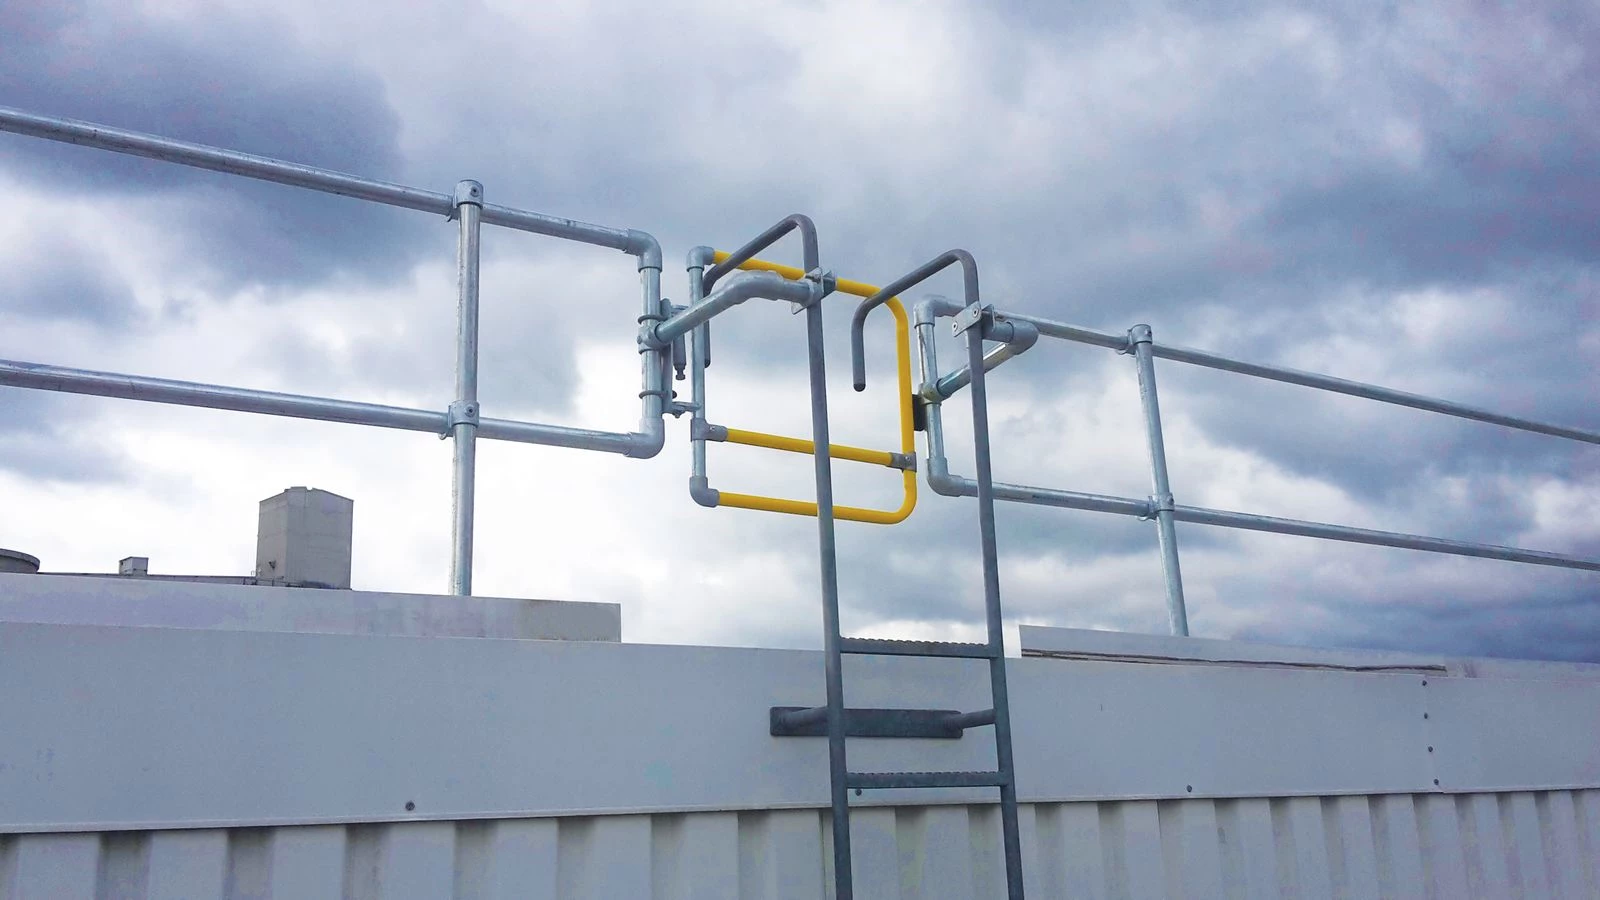 Sistema de barandillas para escaleras Kee Guard® | acceso seguro a cubiertas | sistemas de protección anticaídas en cubiertas